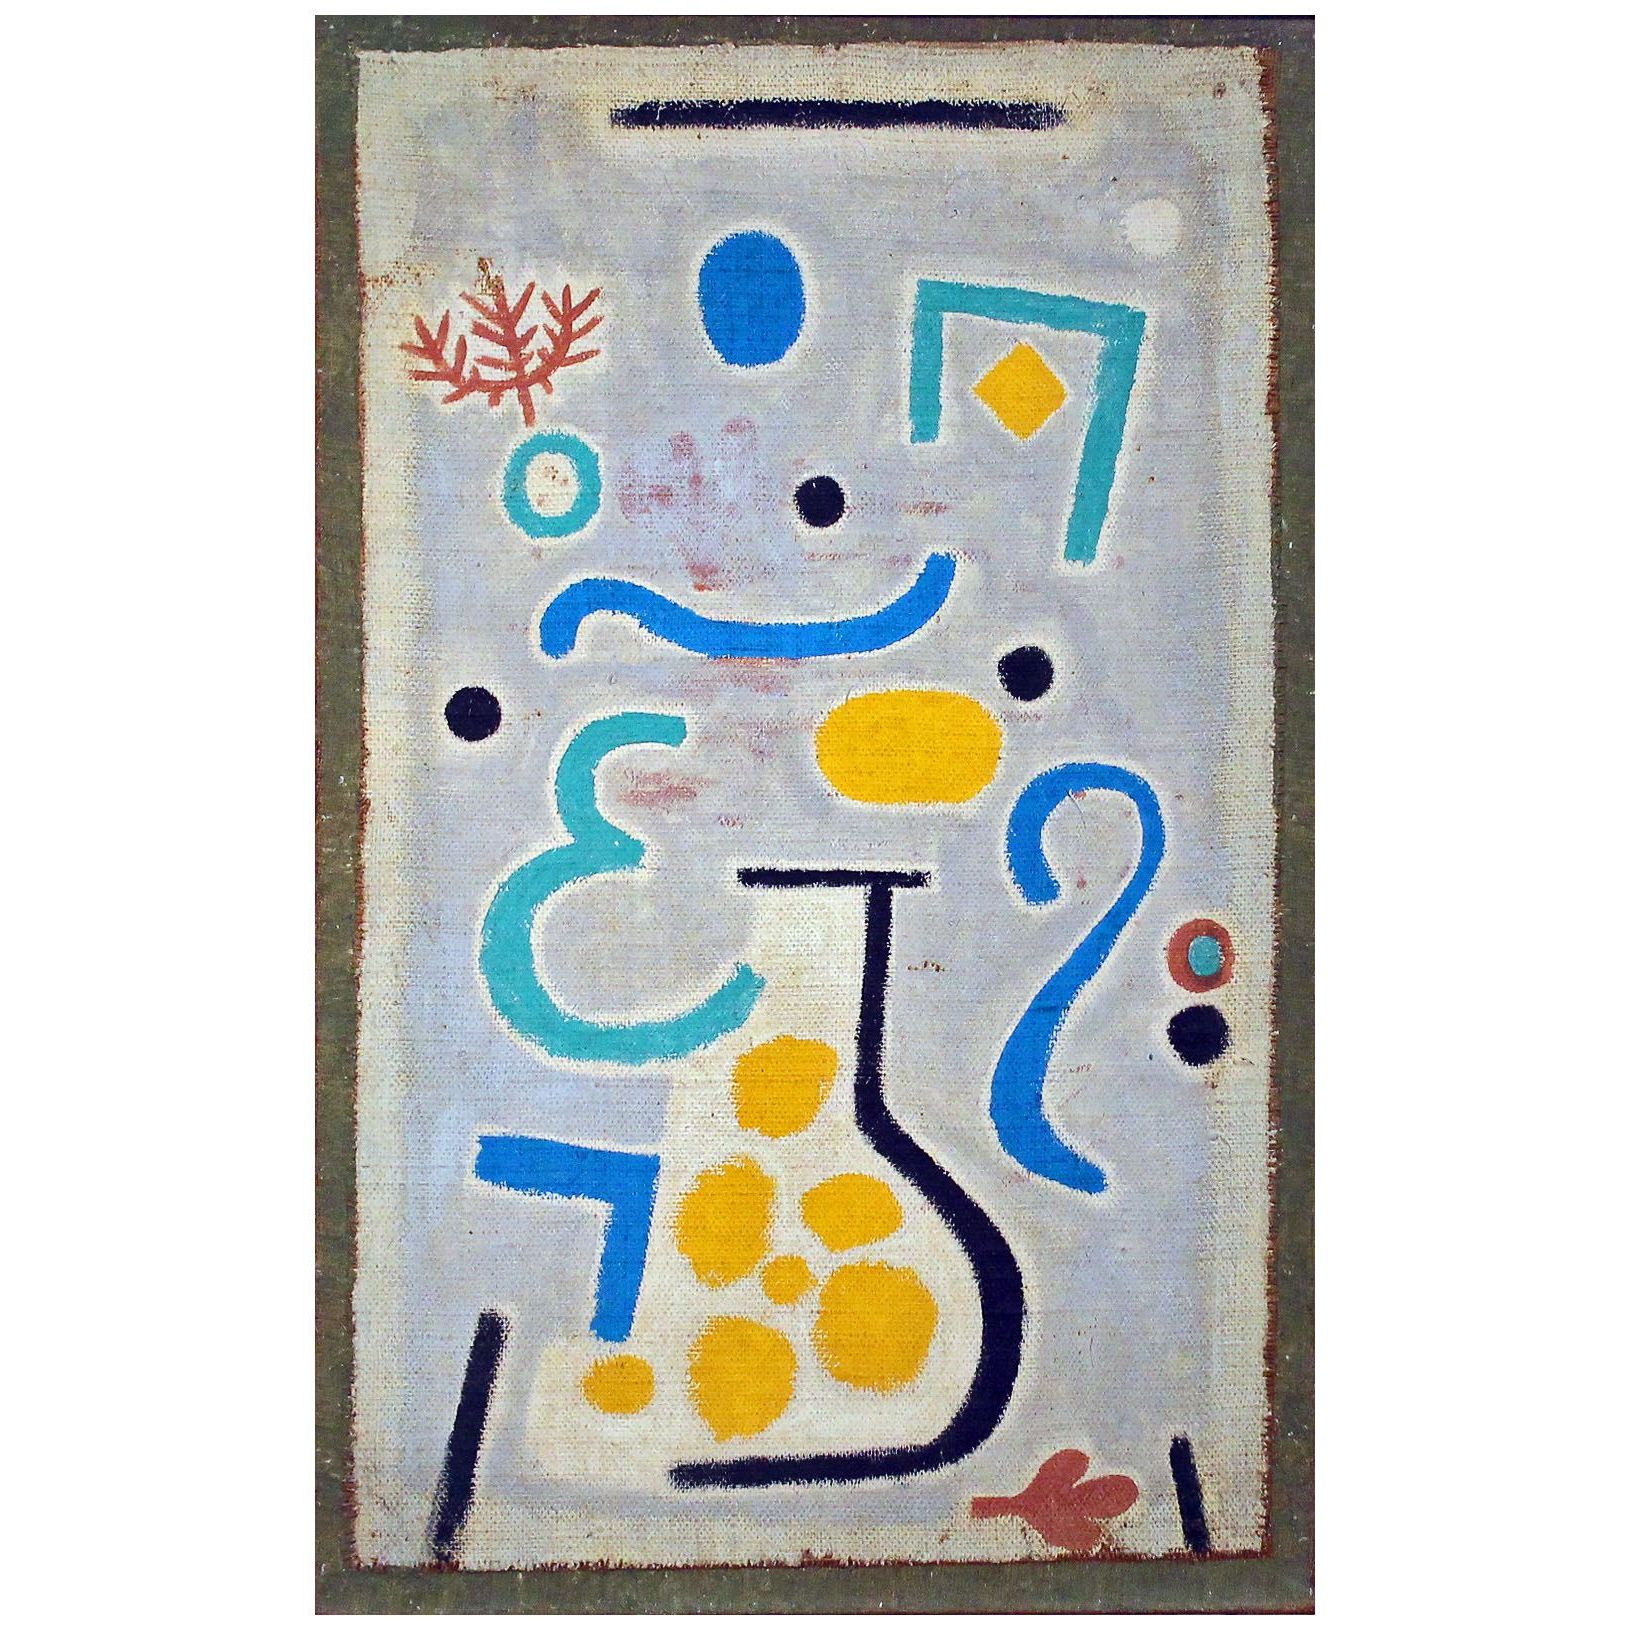 Paul Klee. Die Vase. 1938. Fondation Beyeler, Basel